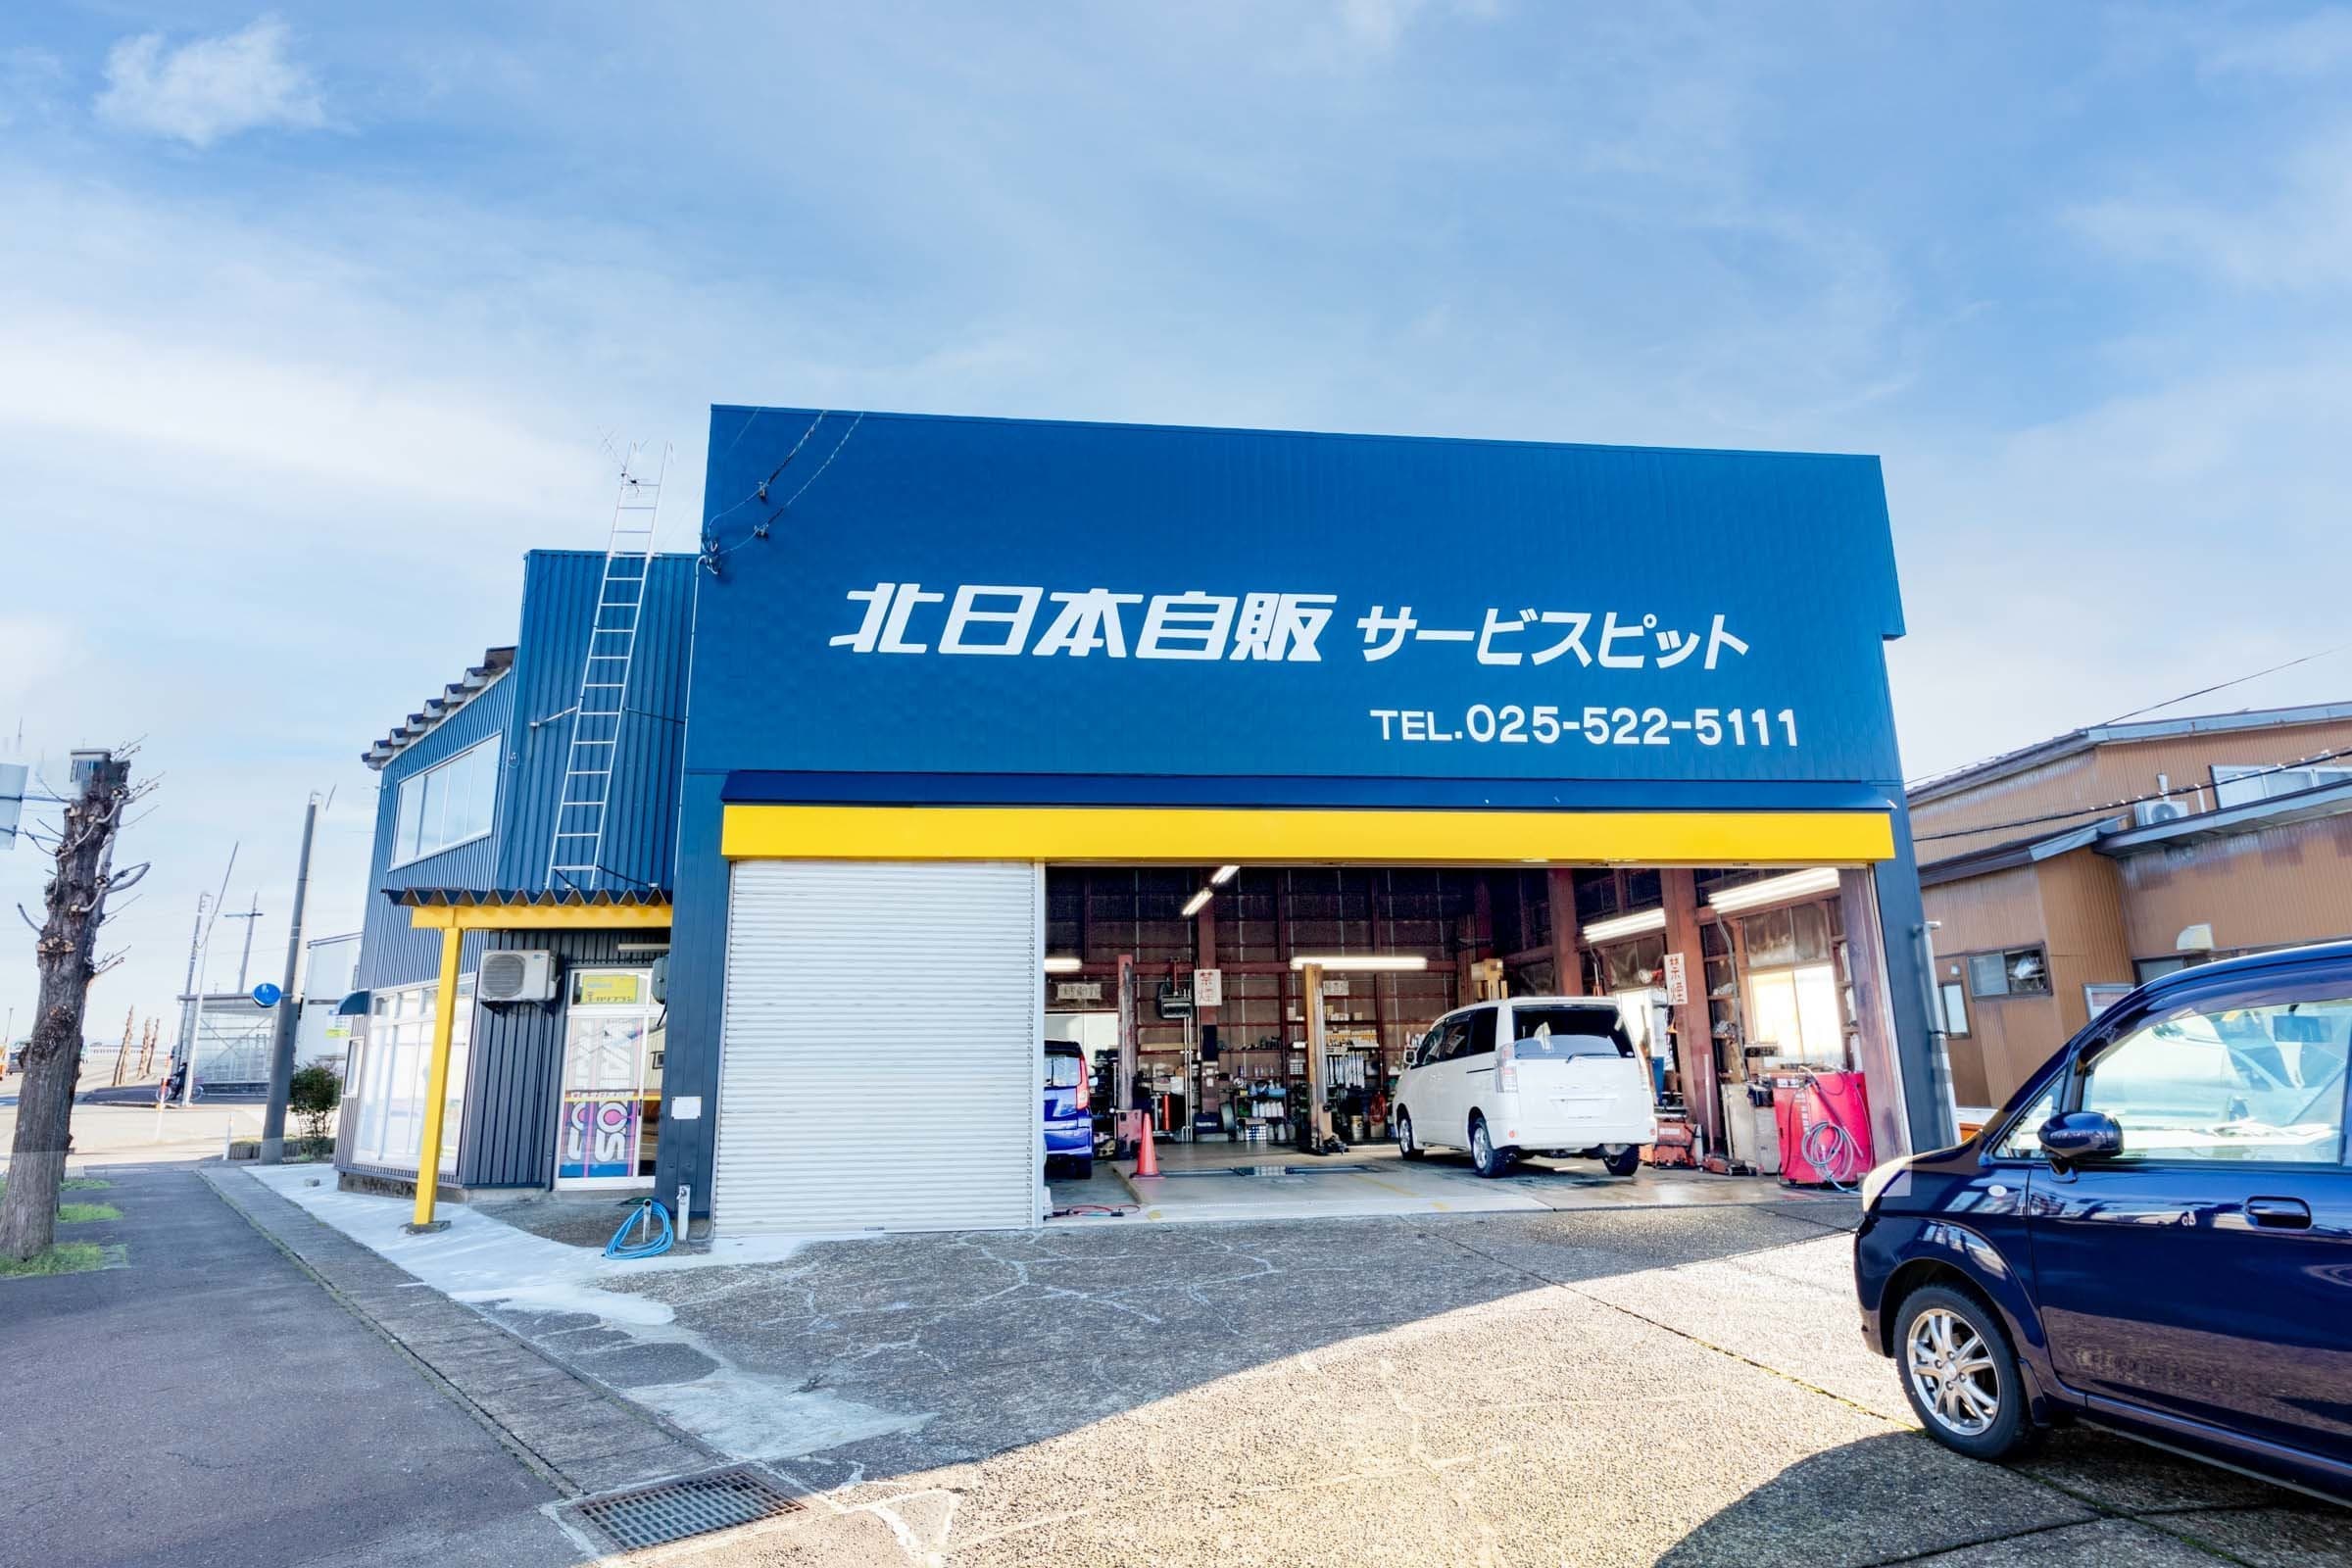 クルマ探しは北日本自販で  軽自動車・ミニバン・SUV・輸入車まで、おクルマなら何でもお任せください！ お客様のご希望、ご納得の１台をご案内いたします！ 整備工場完備なのでアフターも万全です。お気軽にご来店ください。新潟県上越市